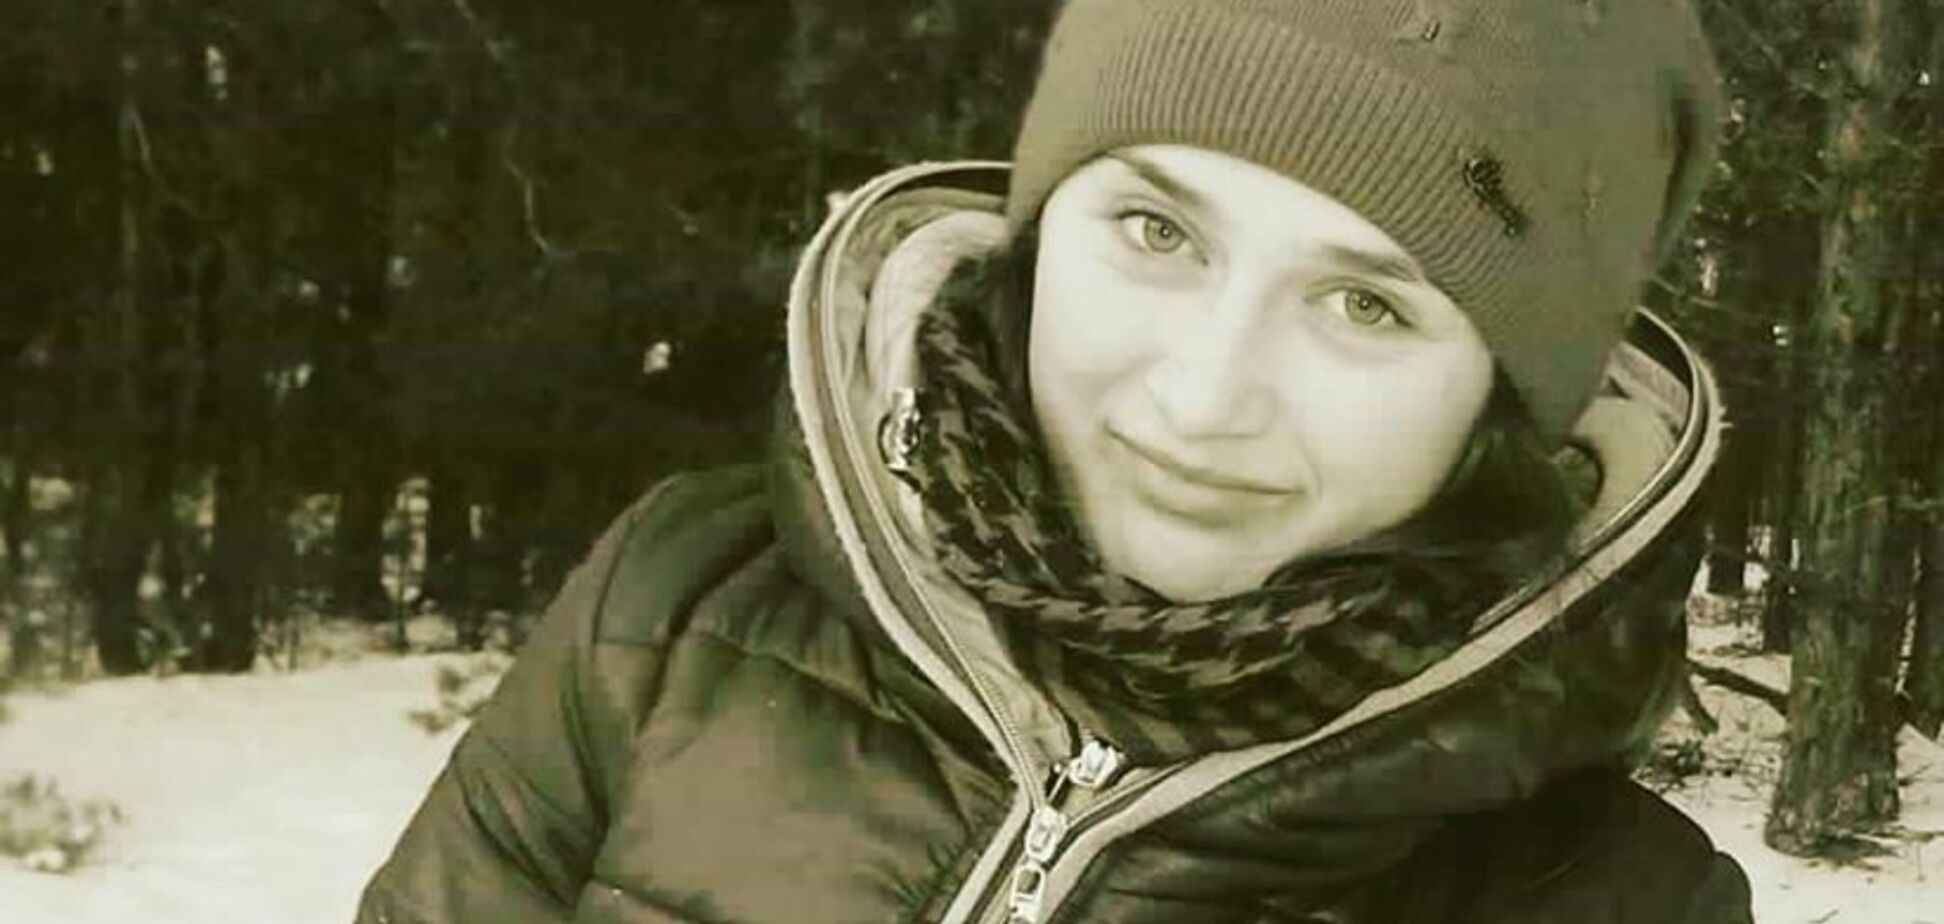 Провалилася по шию в болото: з'явилася несподівана версія загибелі студентки на Житомирщині